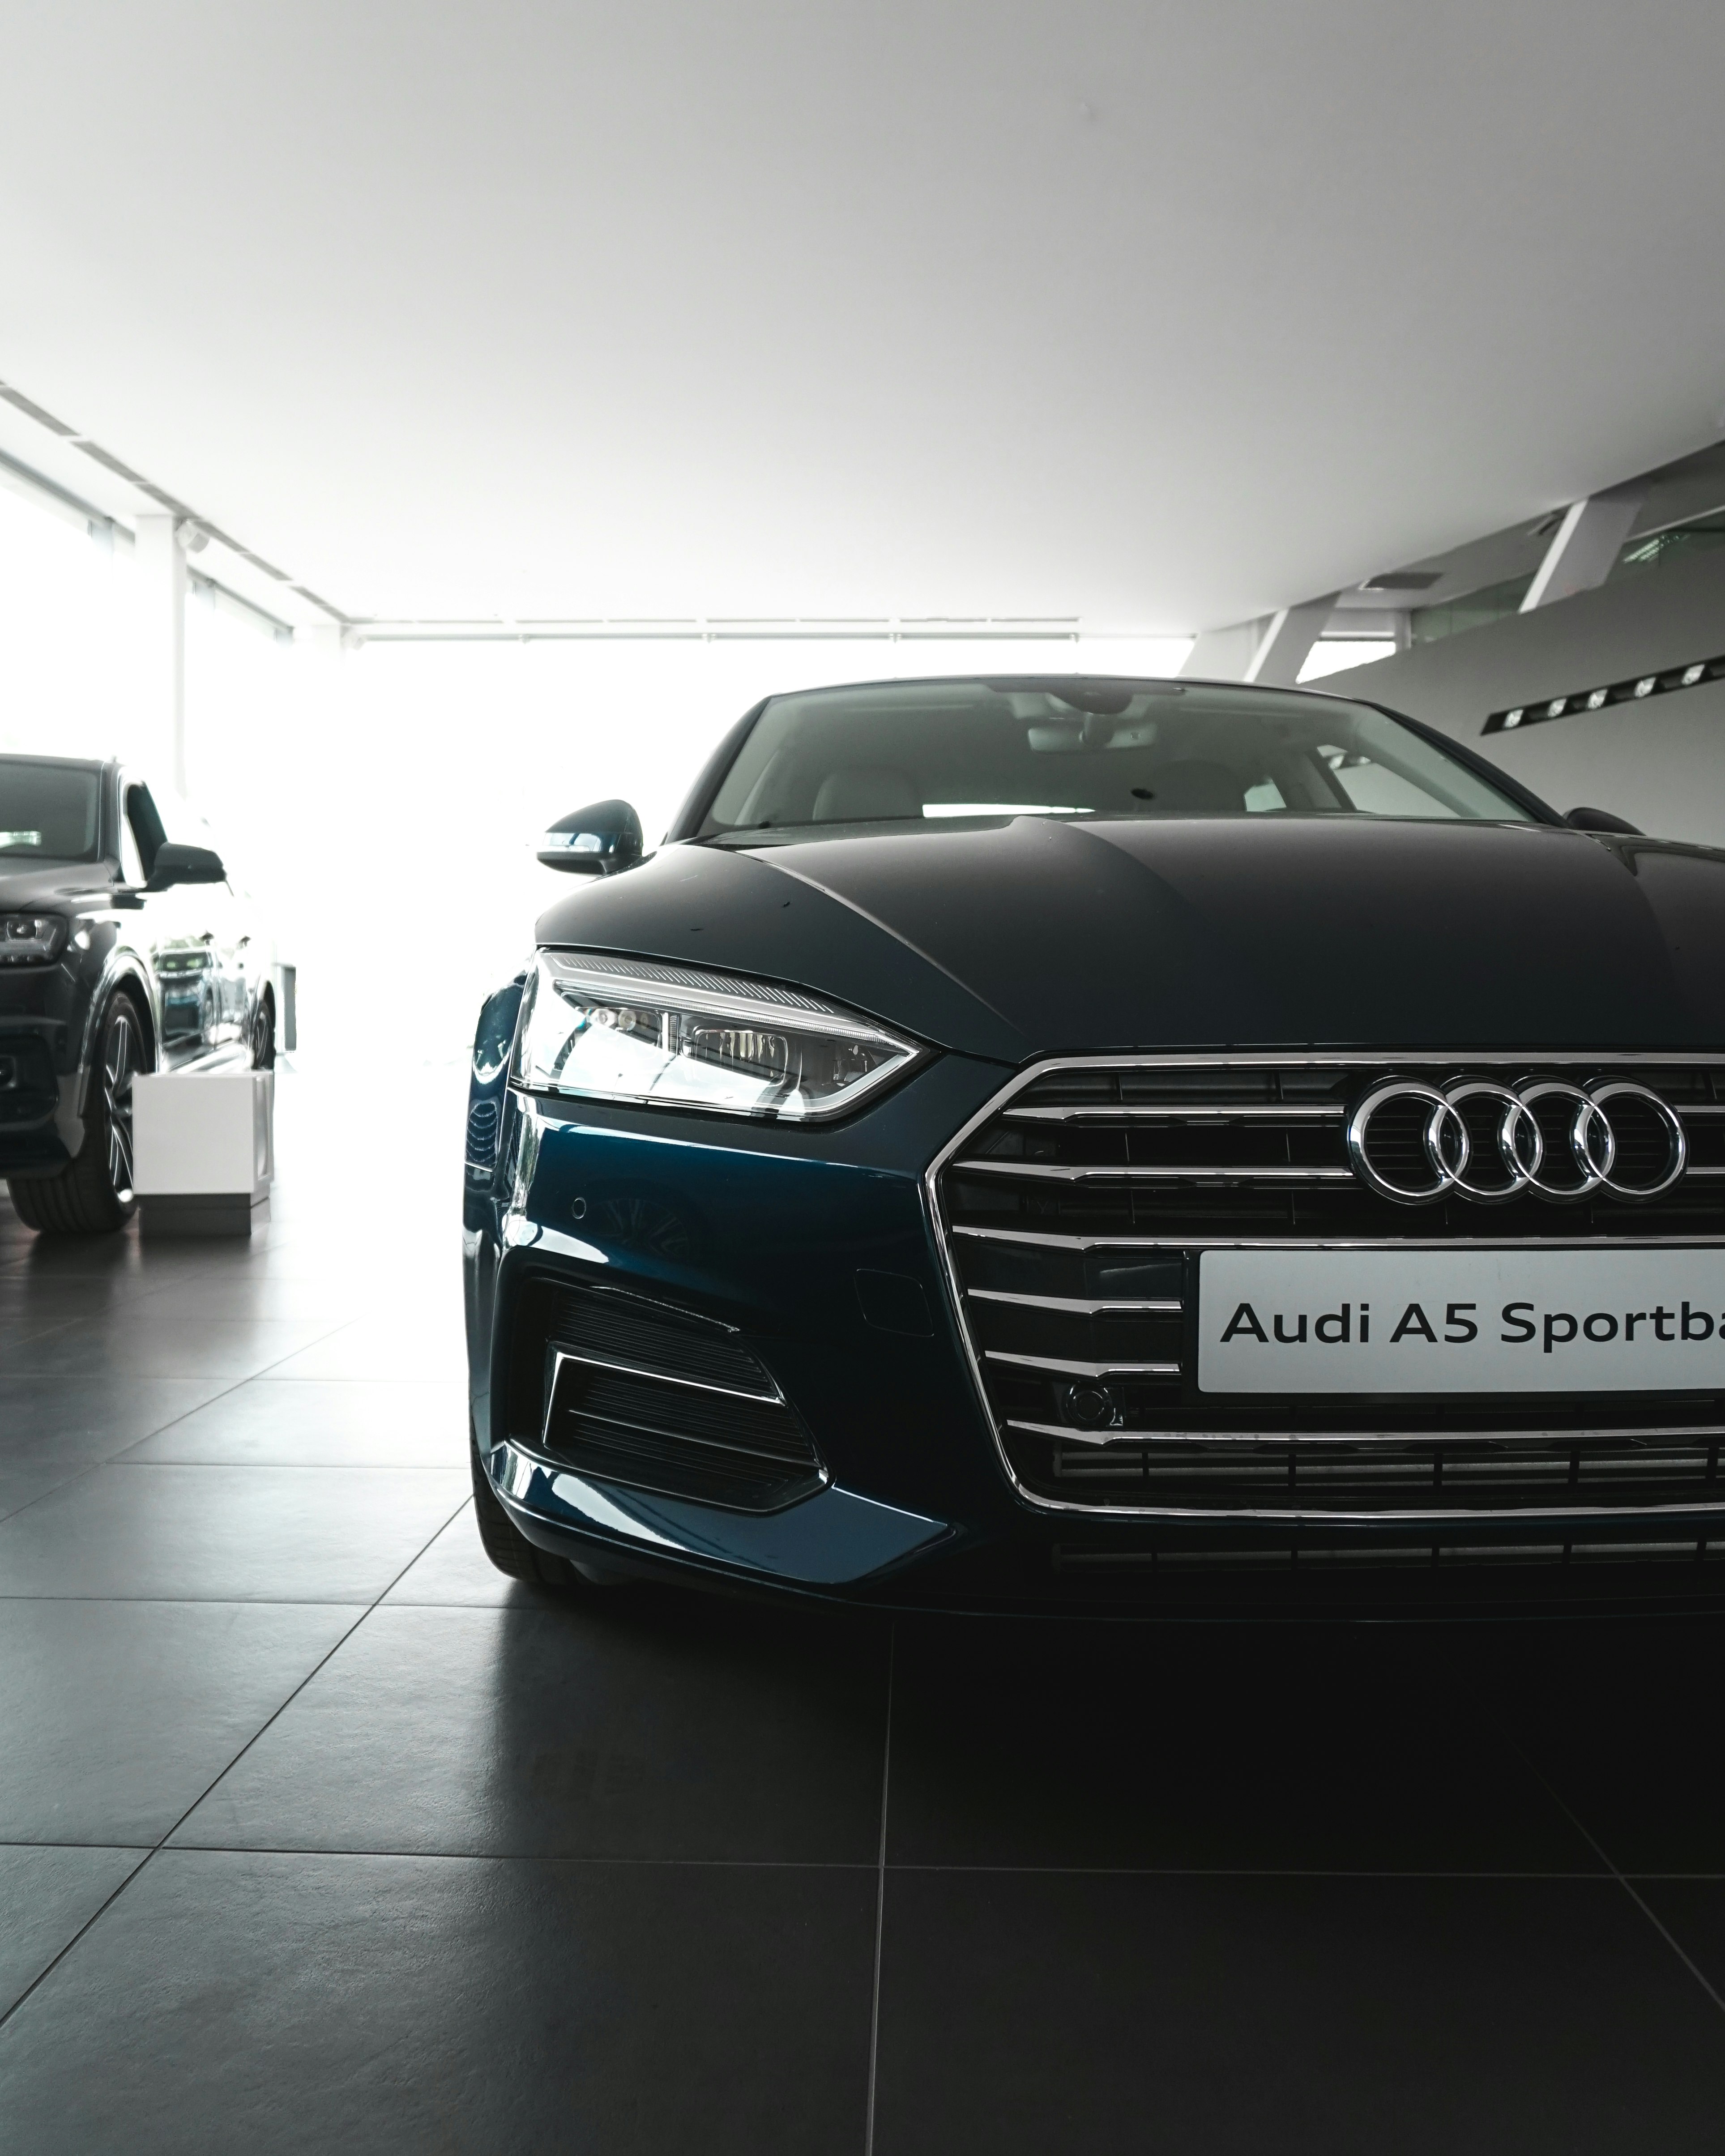 blue Audi A5 parked inside garage